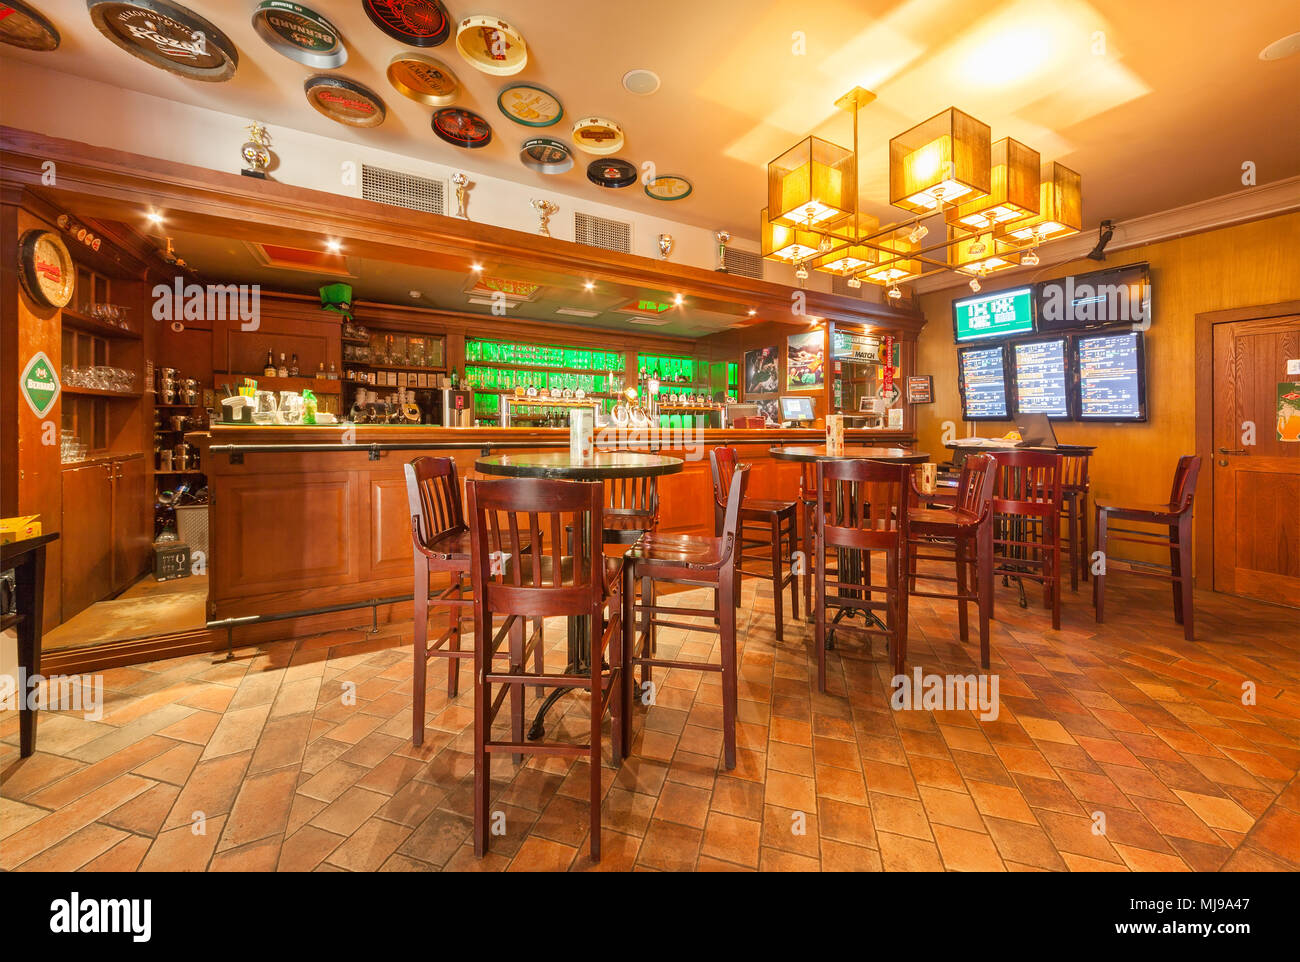 Moscú - Agosto 2014: Interior del restaurante cervecería 'Grill Hoff'.  Mostrador de bar de madera en una sala con mesas redondas y sillas altas  Fotografía de stock - Alamy